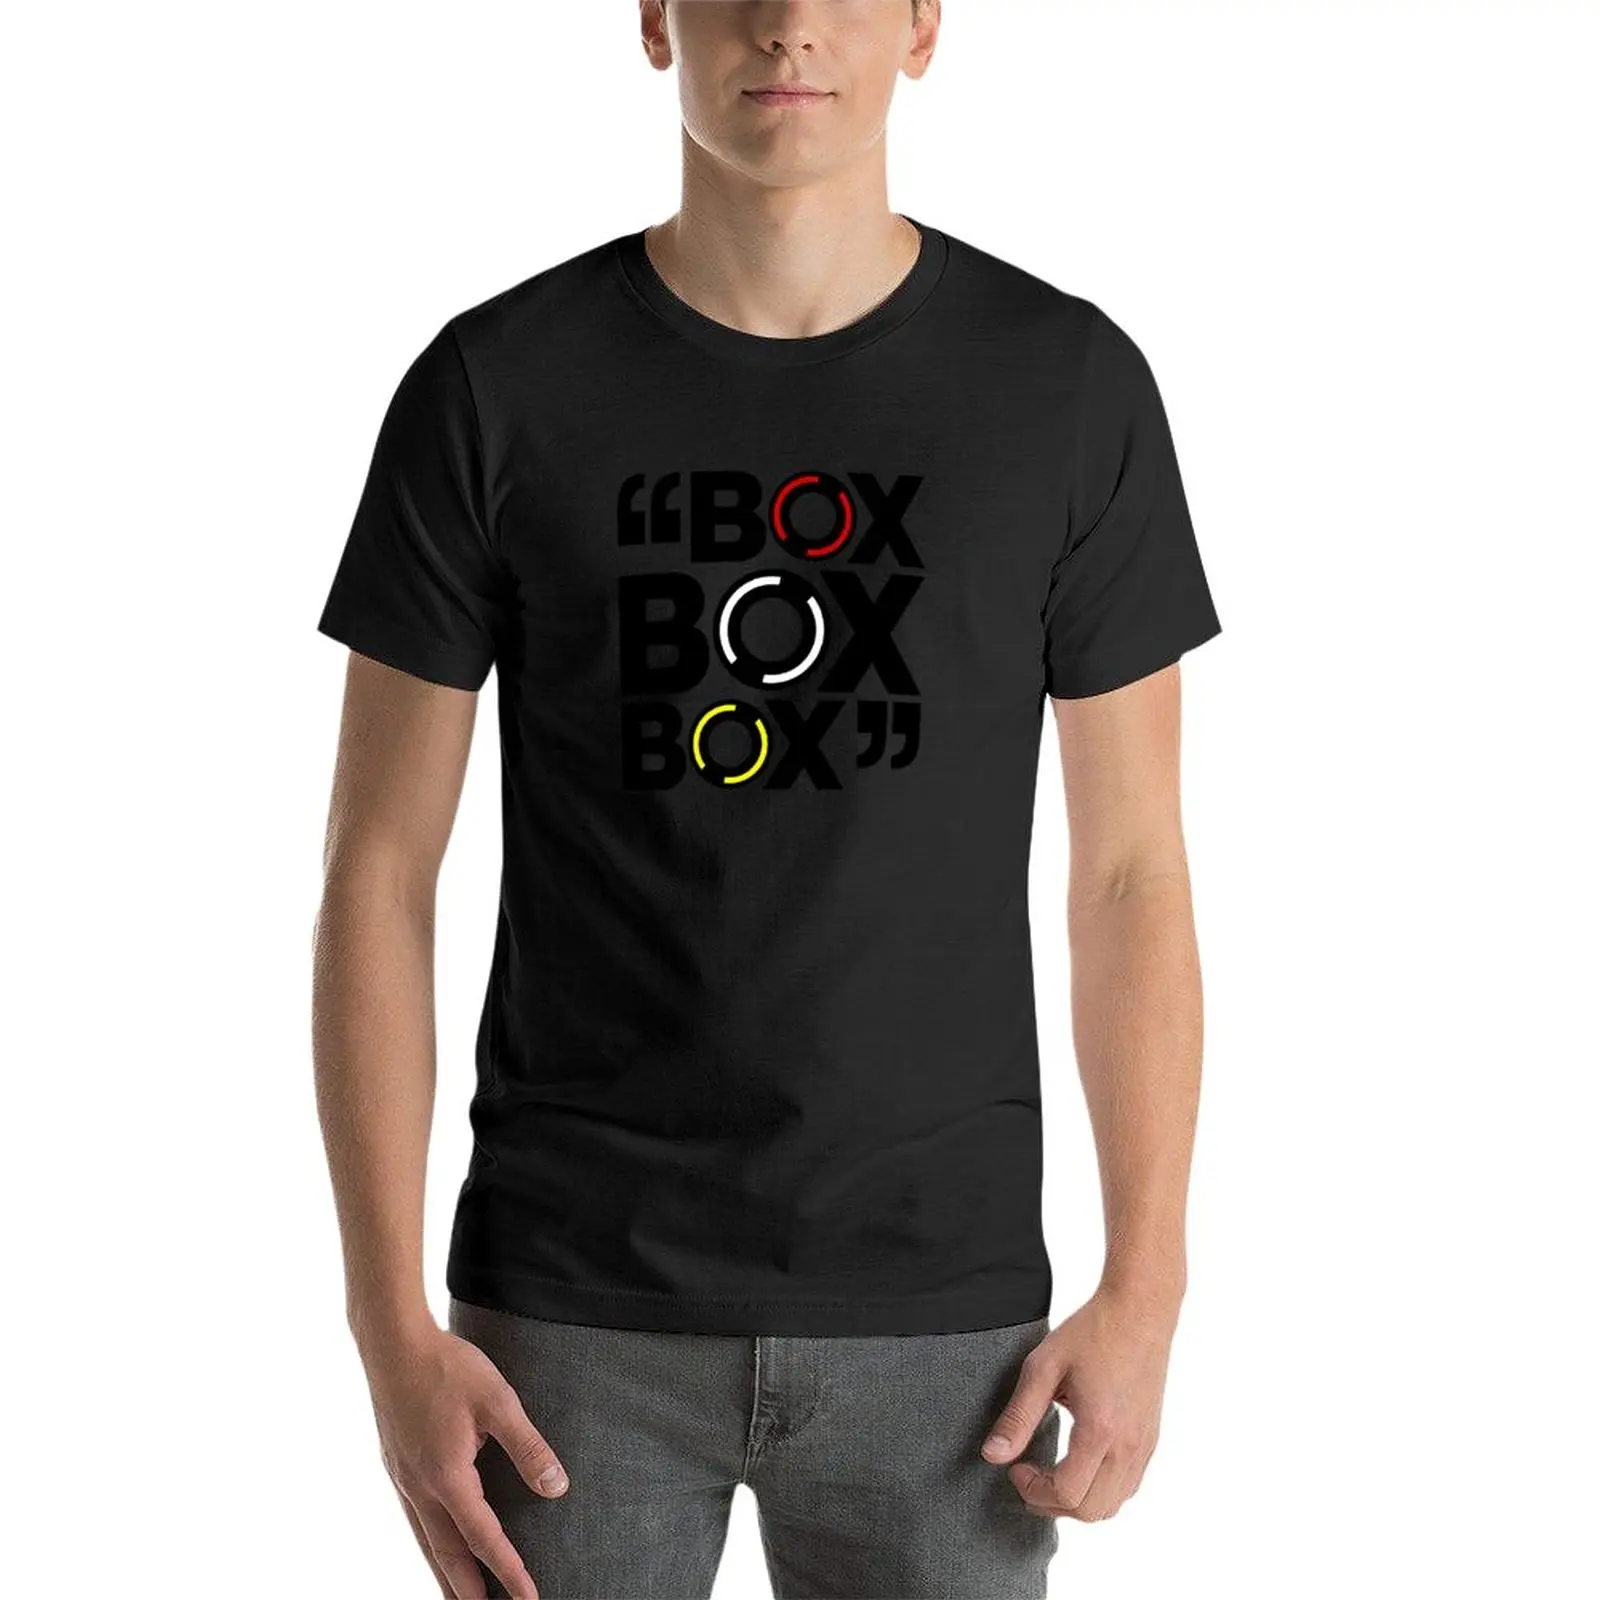 Тениска С дизайн шинного компаунда Формула 1, летни потници, тениска за момче, мъжка тениска с изображение - 3